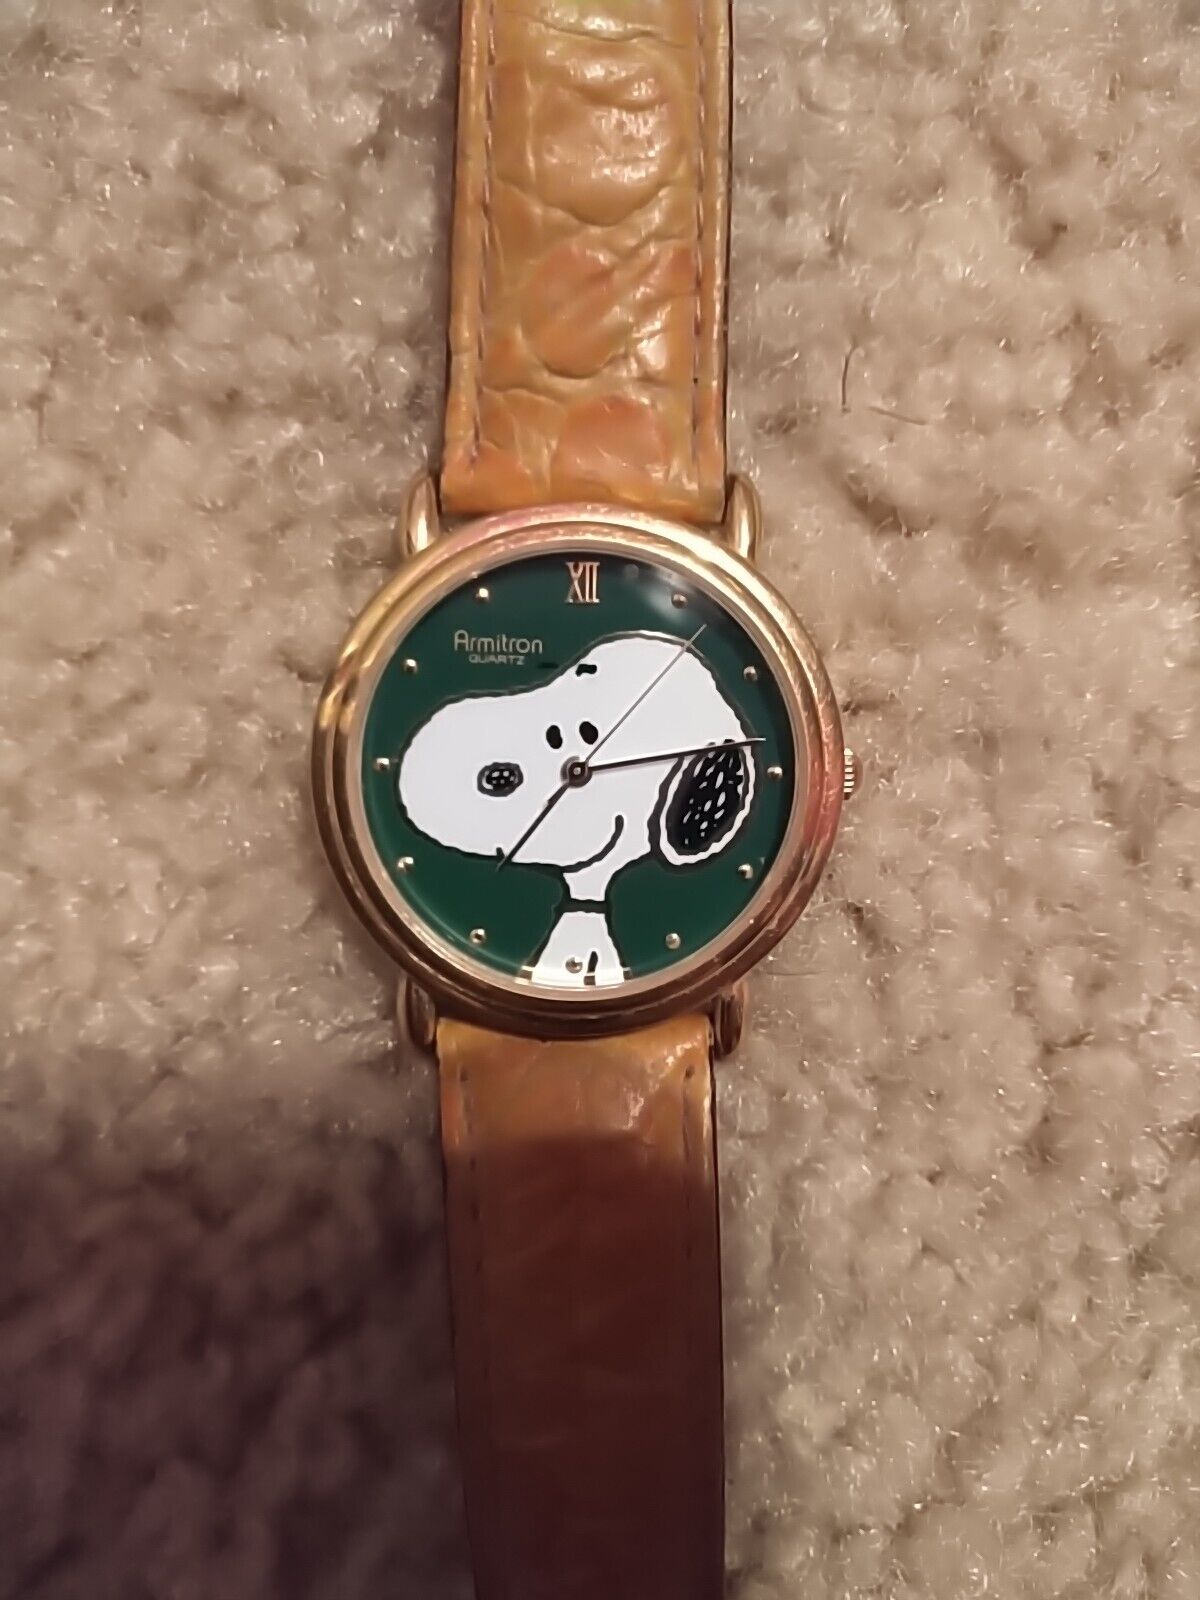 Vintage Rare 1958 Armitron Snoopy Watch